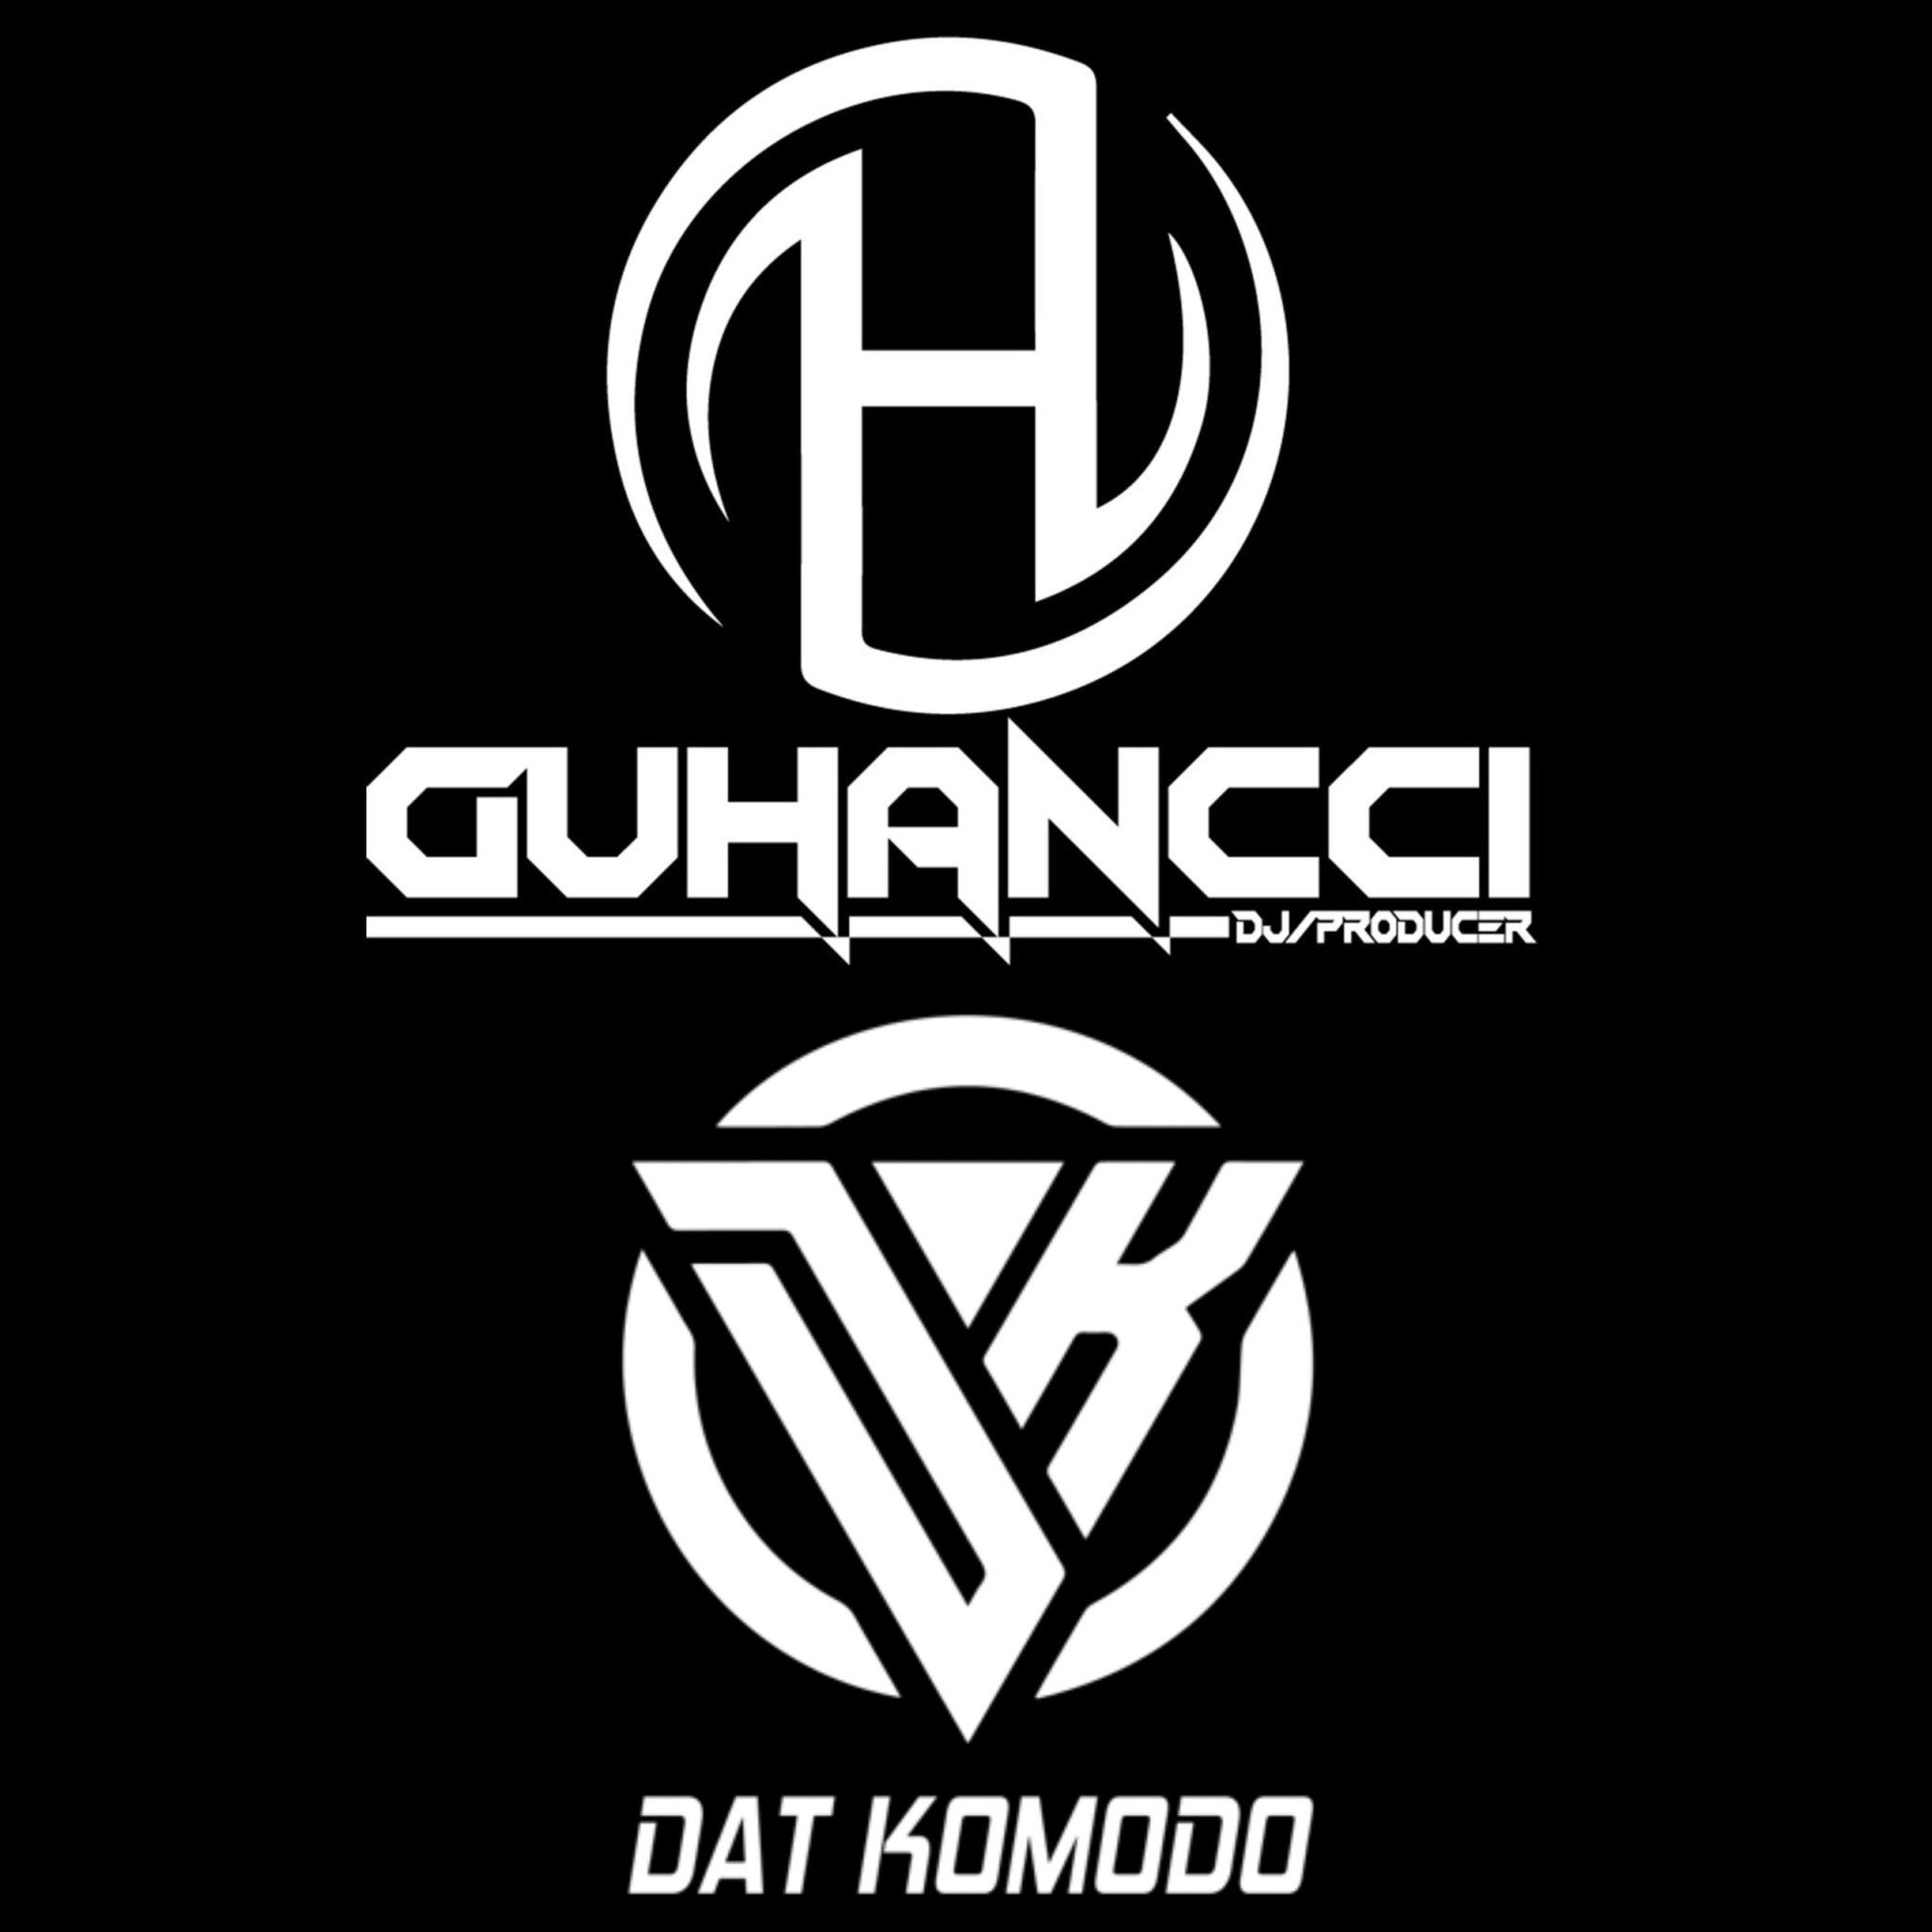 డౌన్లోడ్ Express Music - DatKomodo ft guHancci (guHancci Team)